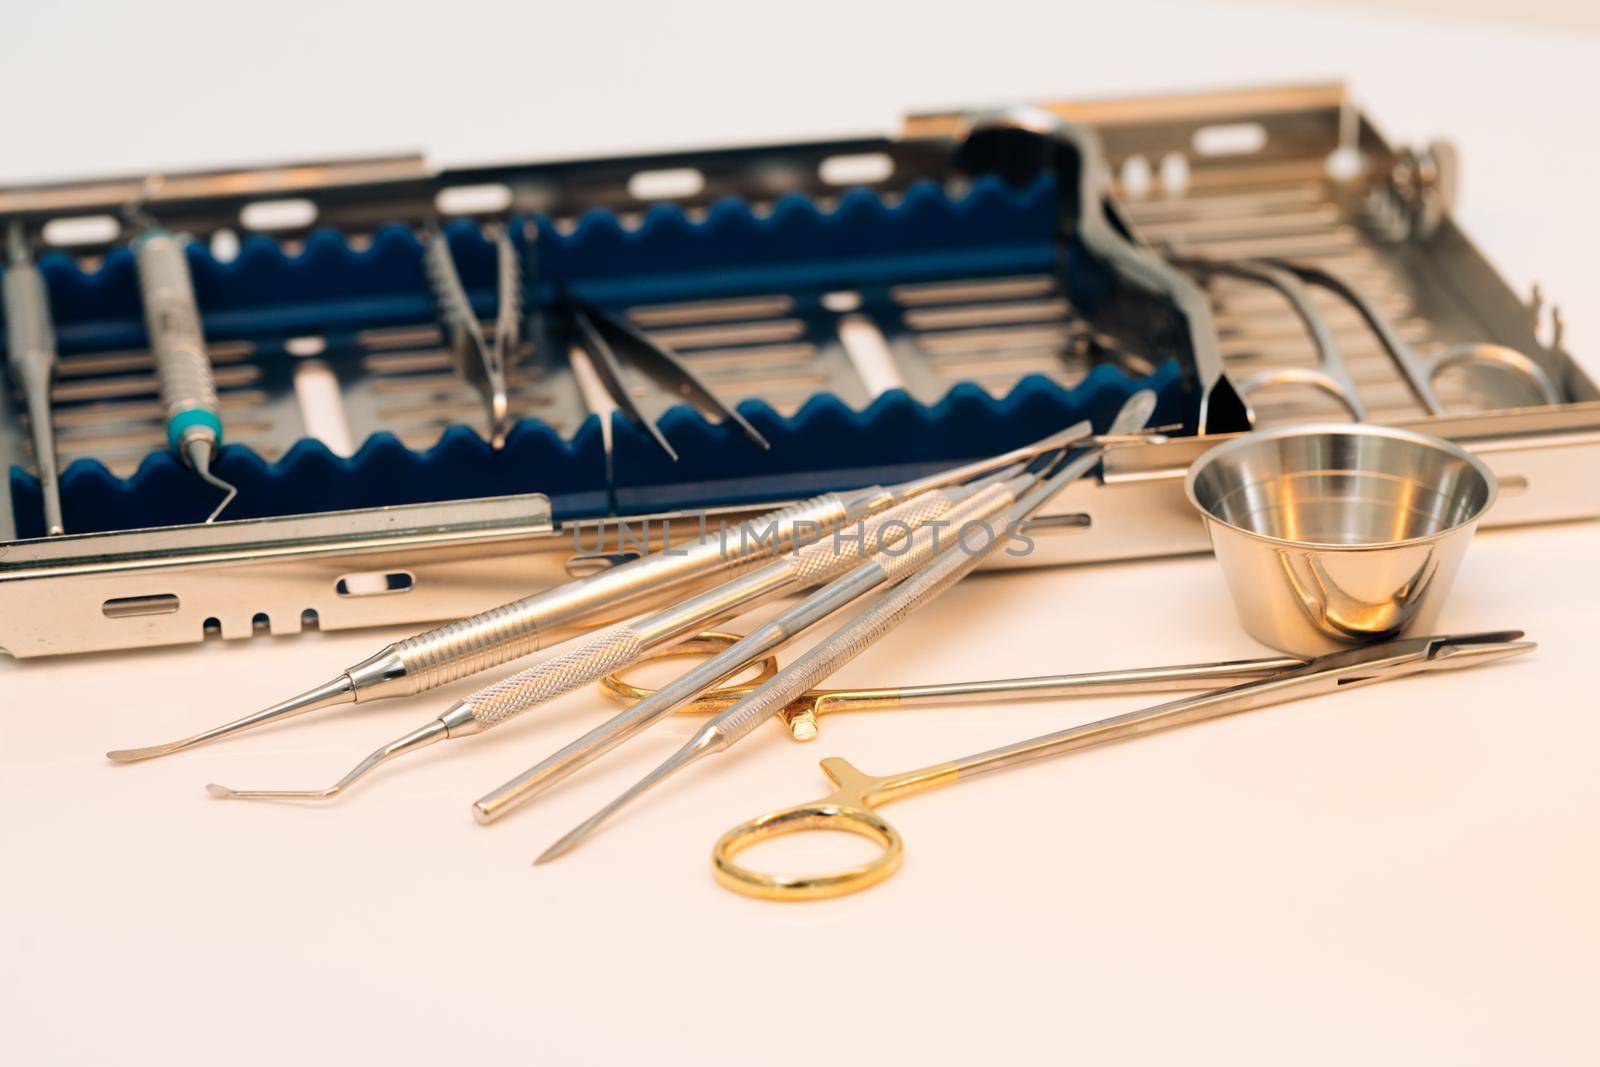 Surgical kit of instruments used in dental implantology. Dentist orthopedist tools. Dental implantation surgical set.